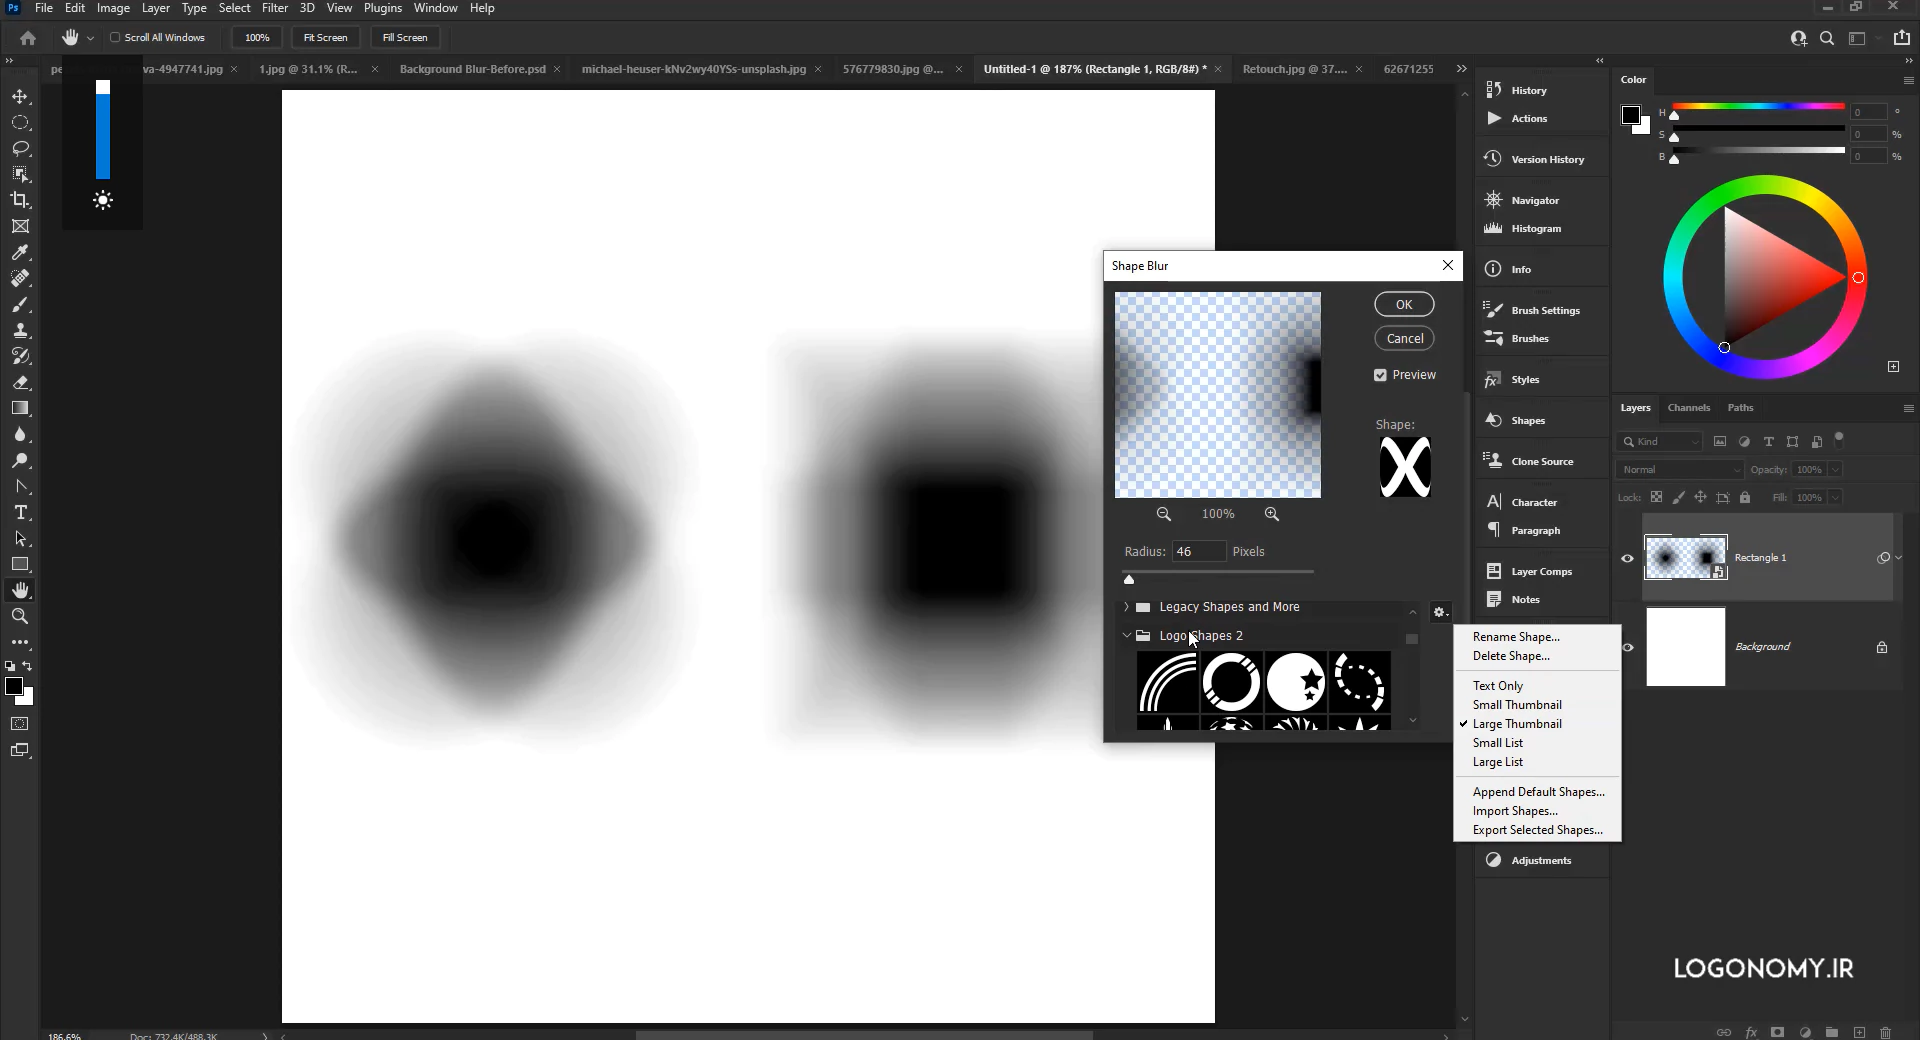 تار کردن تصاویر با فیلتر بلر (blur) در برنامه فتوشاپ (Photoshop)